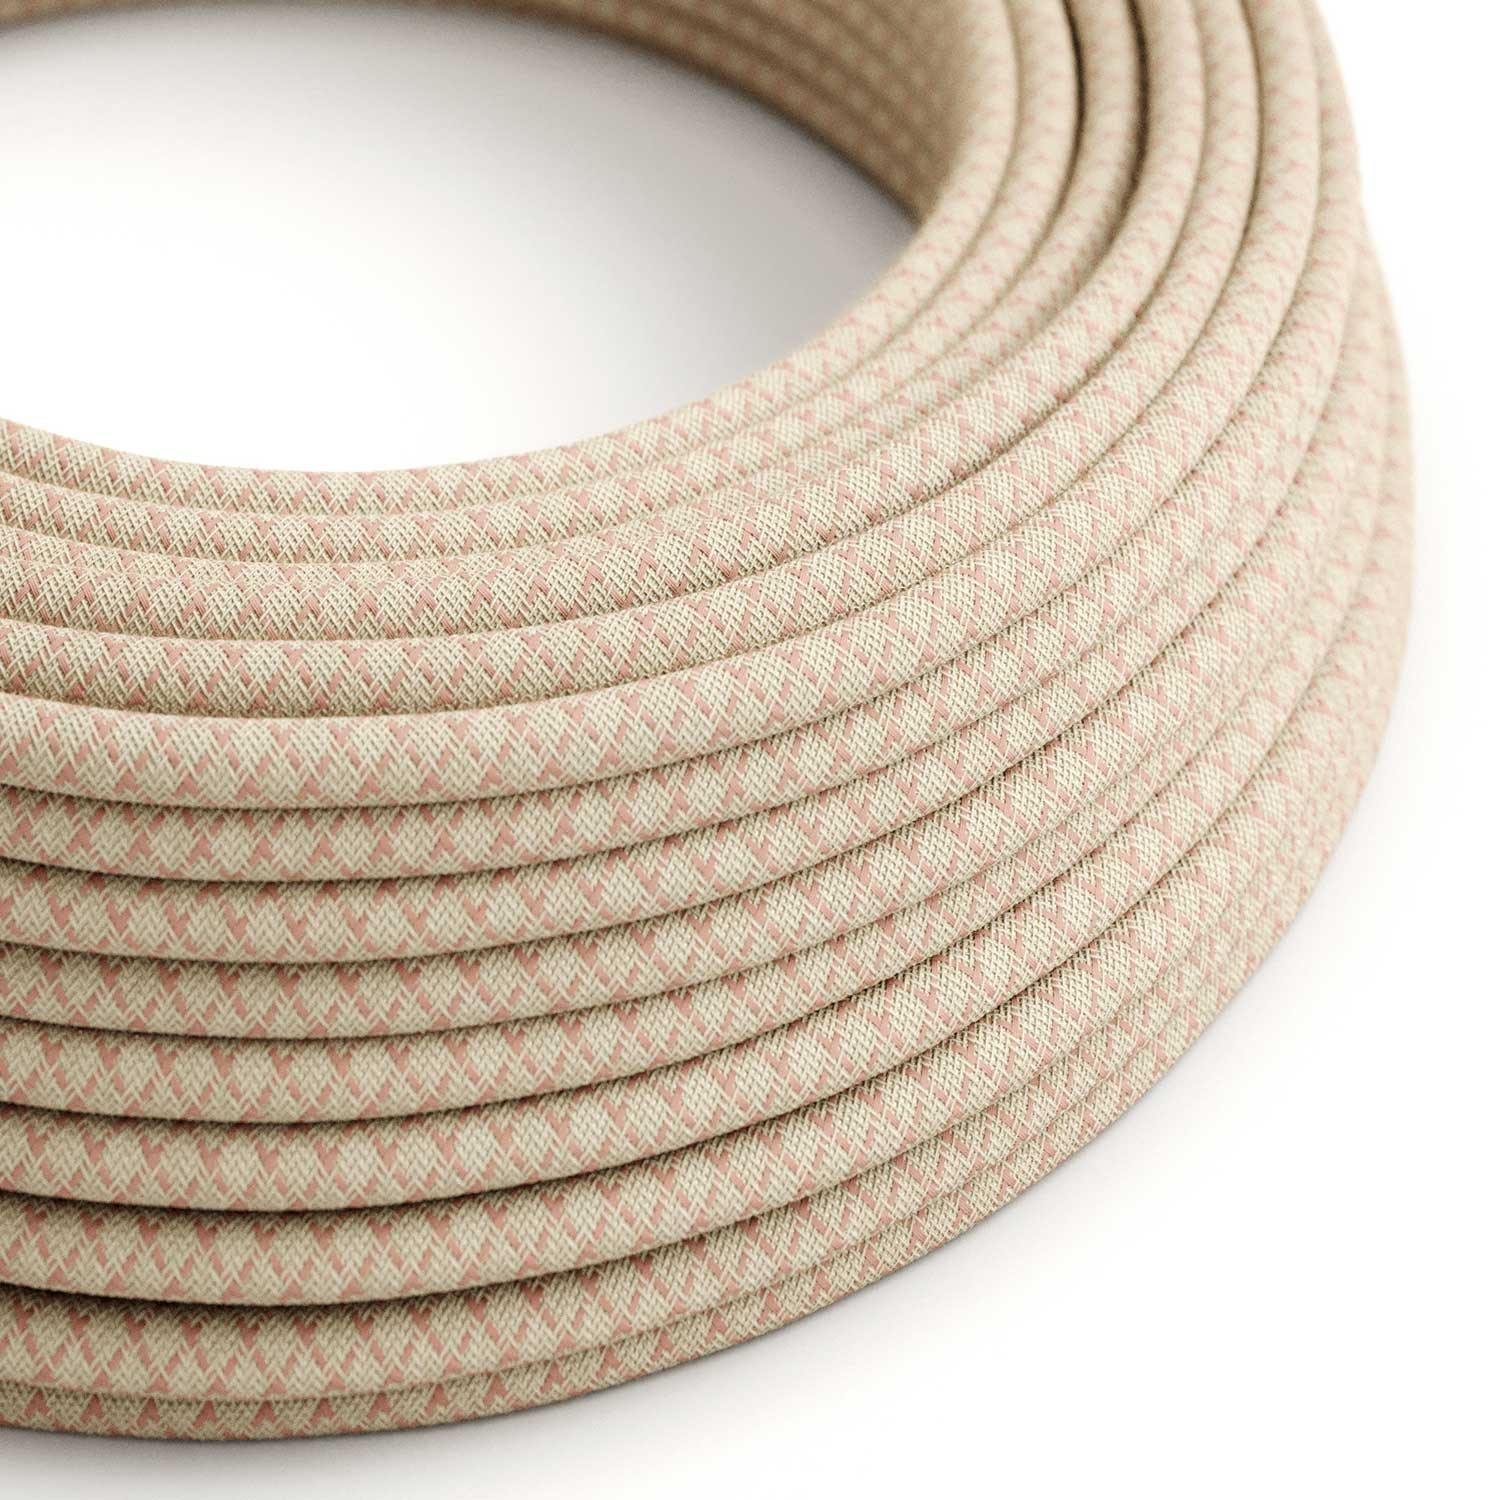 Câble textile Rose antique et losange beige - L'Original Creative-Cables - RD61 rond 2x0,75mm / 3x0,75mm